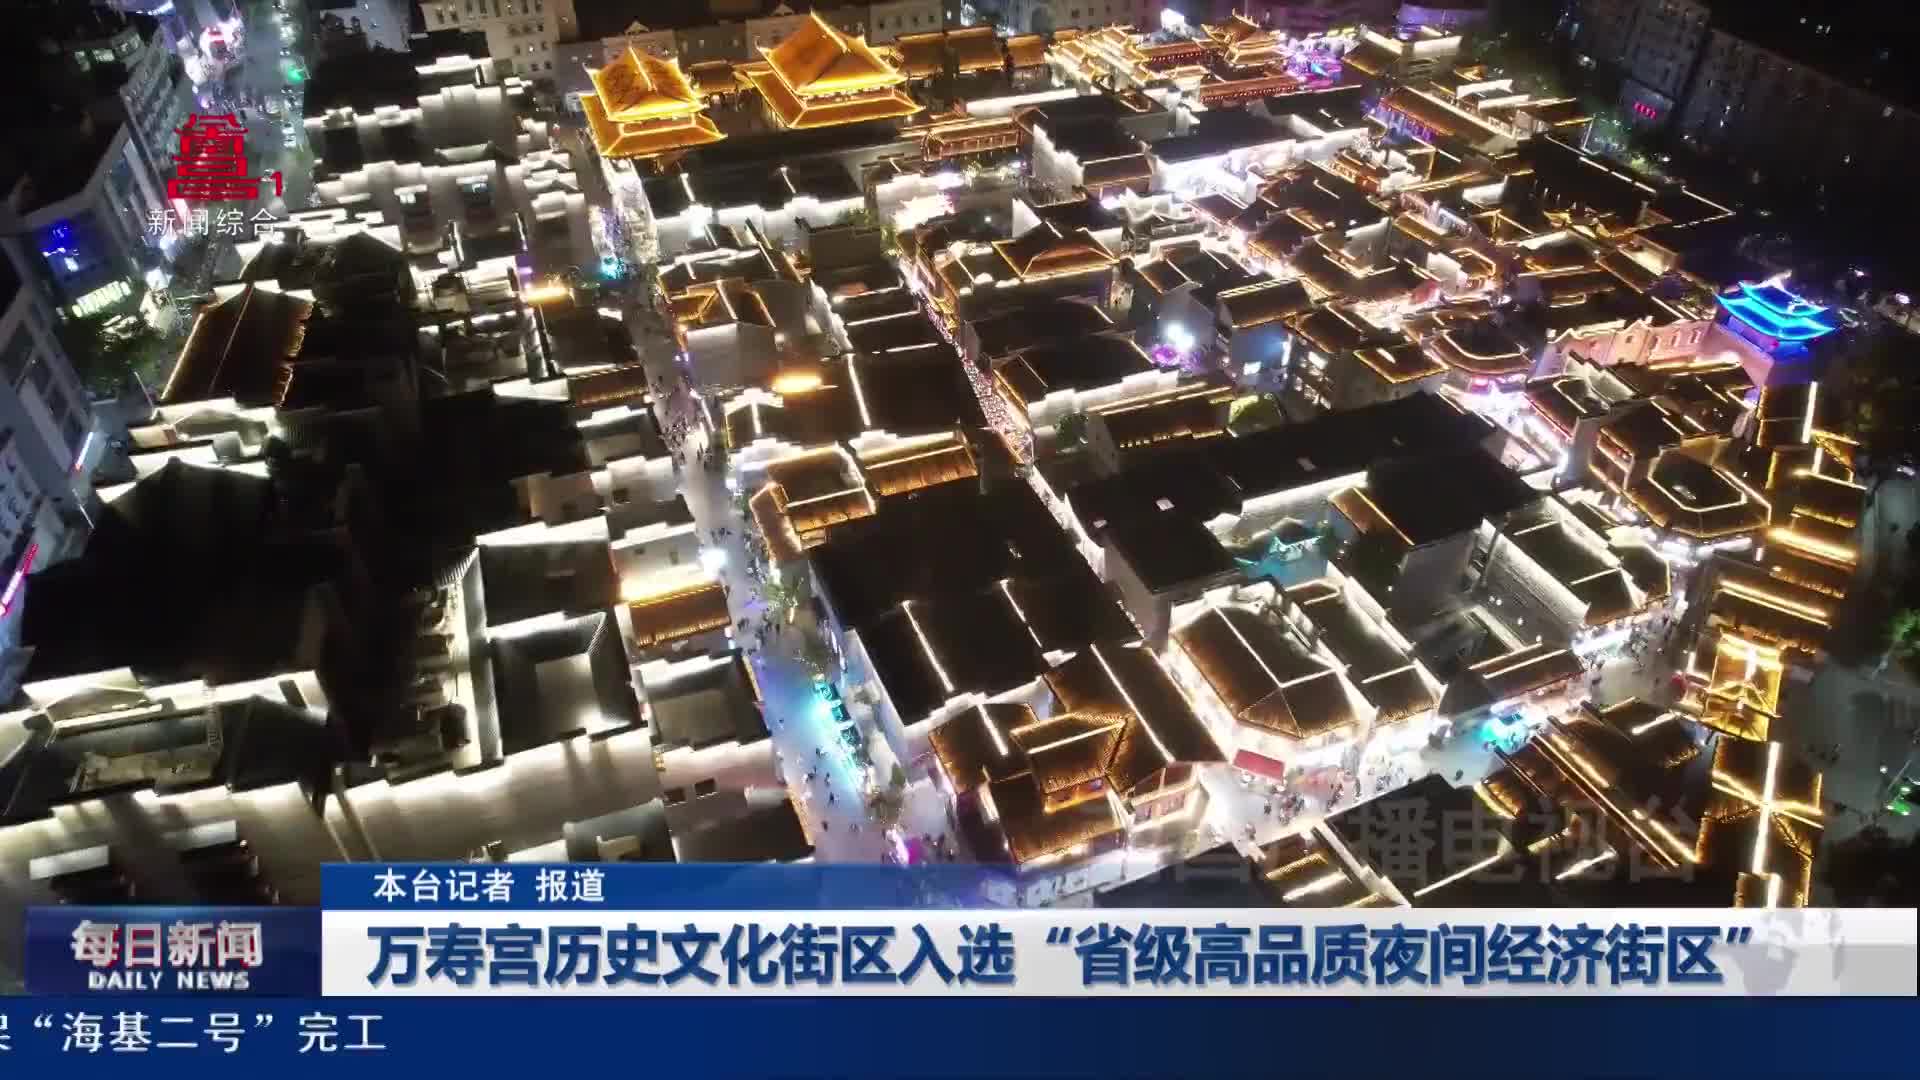 万寿宫历史文化街区入选“省级高品质夜间经济街区”